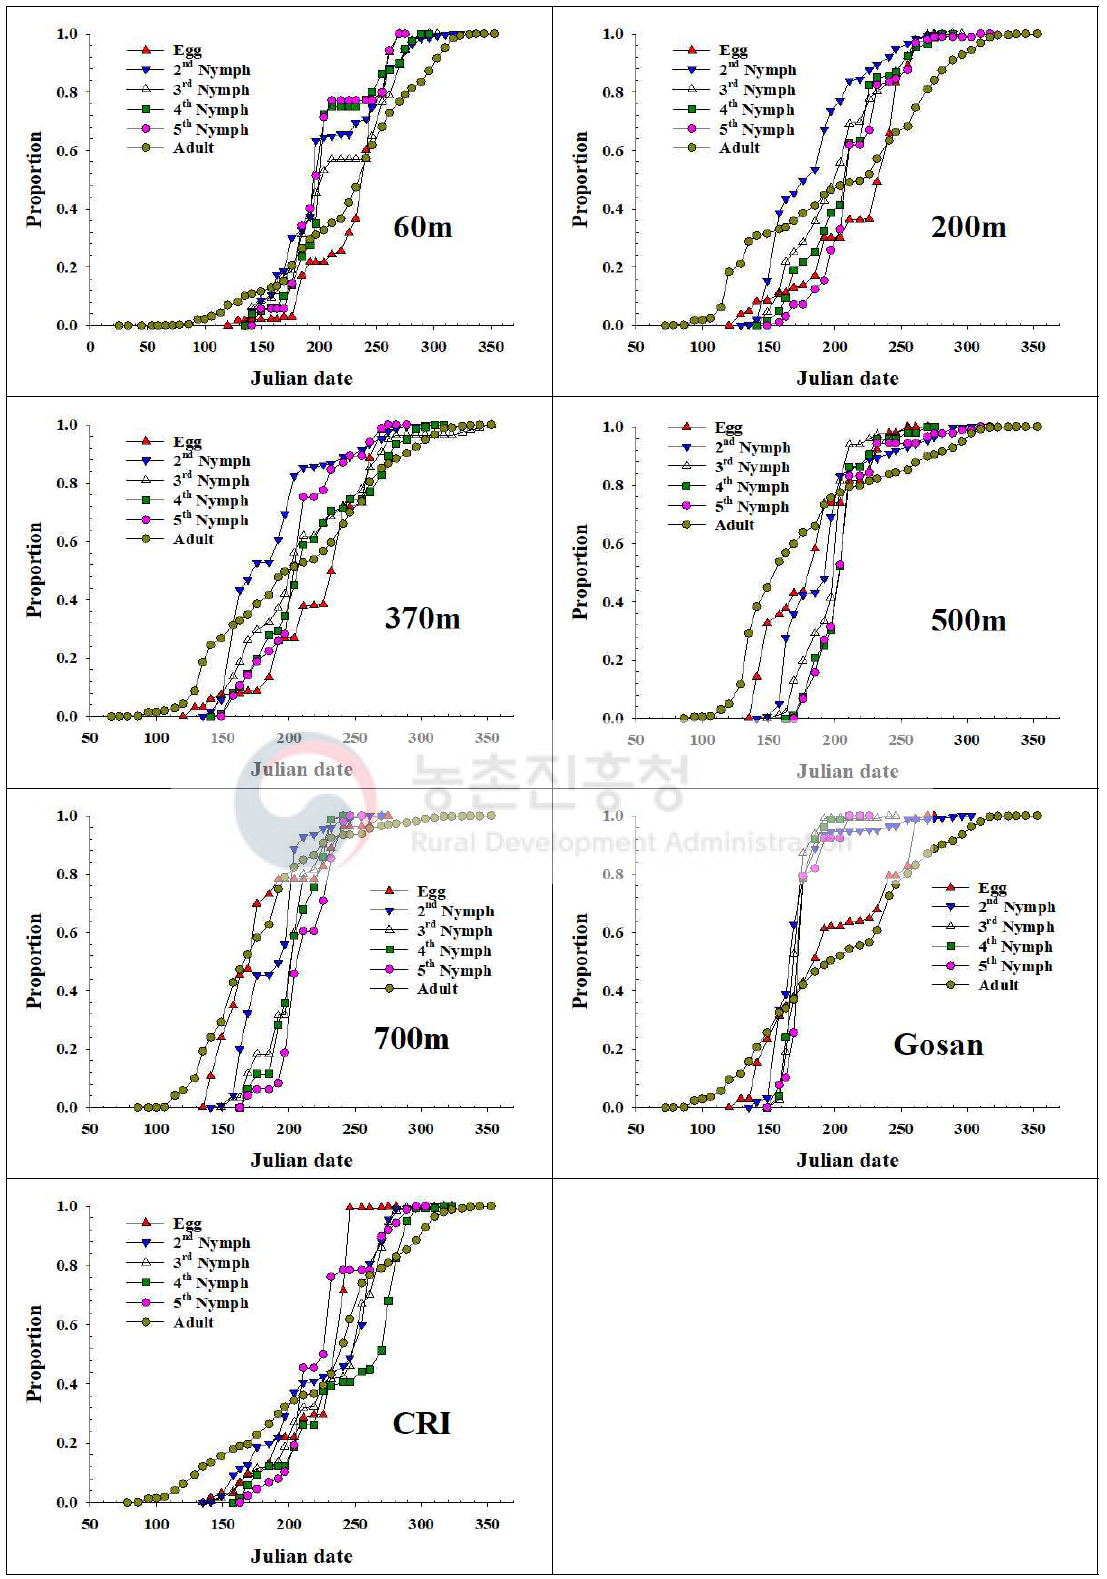 제주지역 톱다리개미허리노린재 발육단계별 개체수 누적증가 비교(2018)